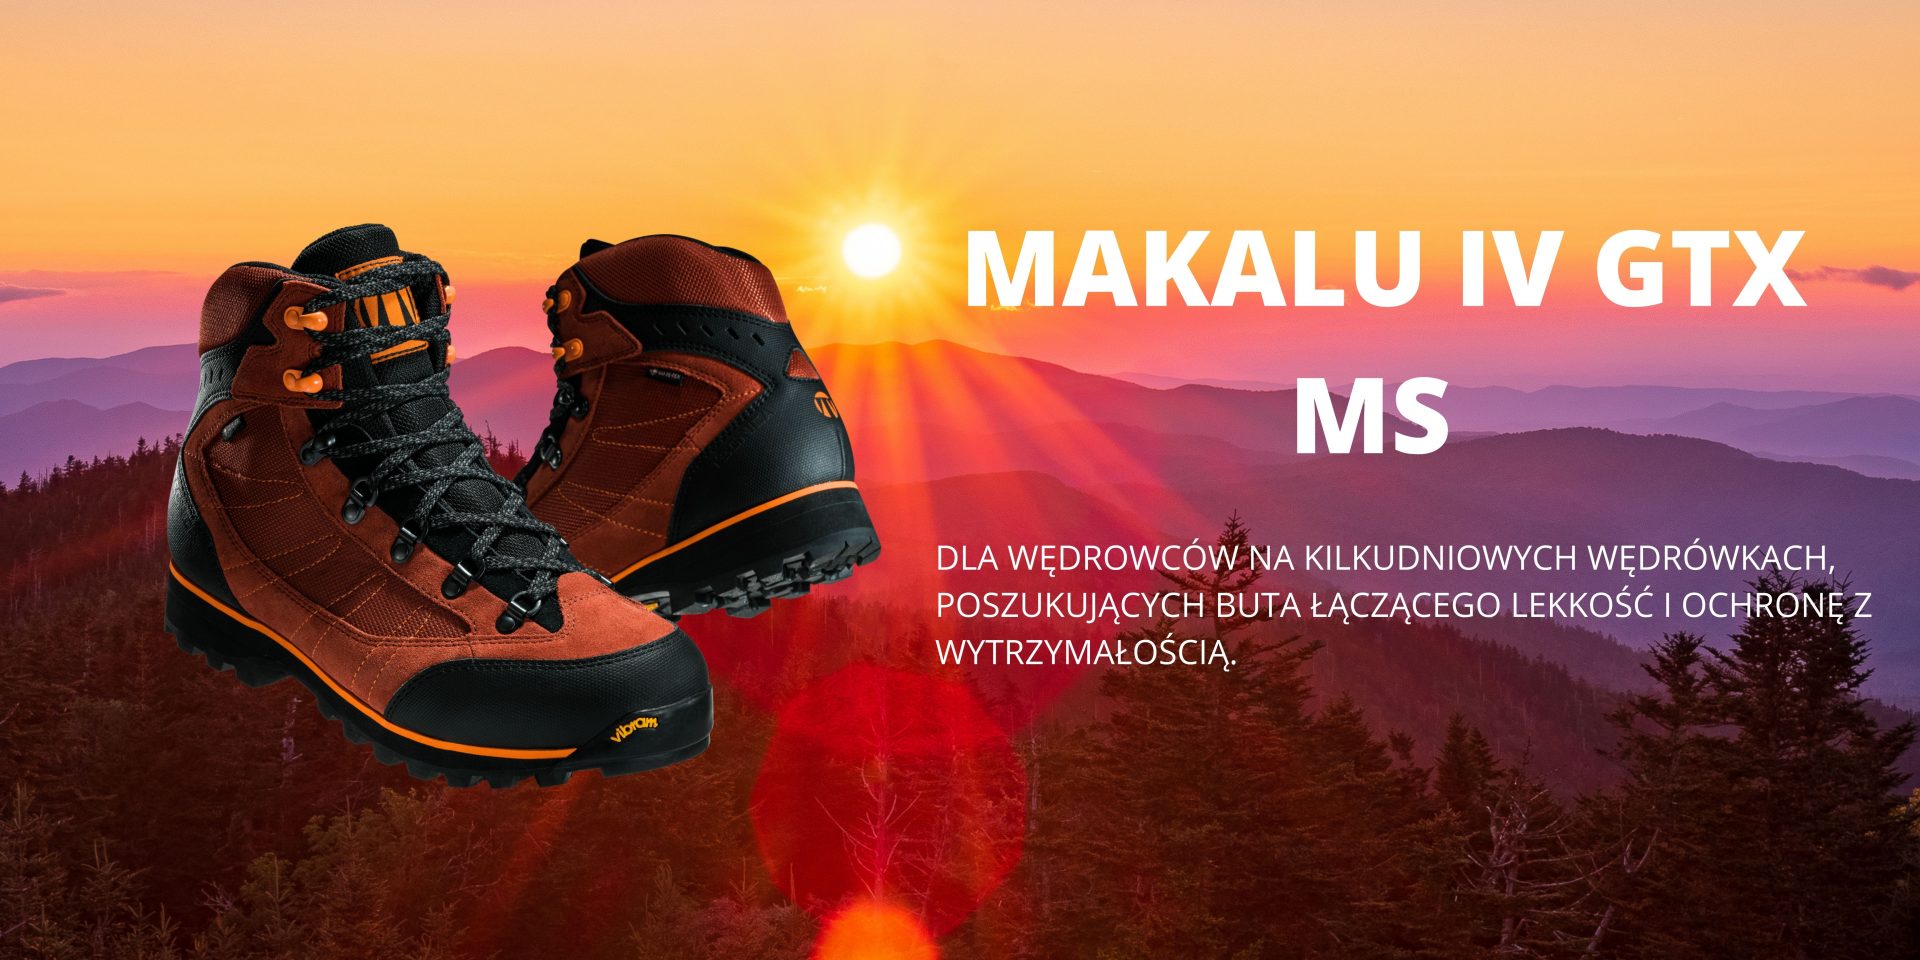 BUTY TREKKINGOWE MĘSKIE MAKALU IV GTX MS. TECNICA | ExploSklep